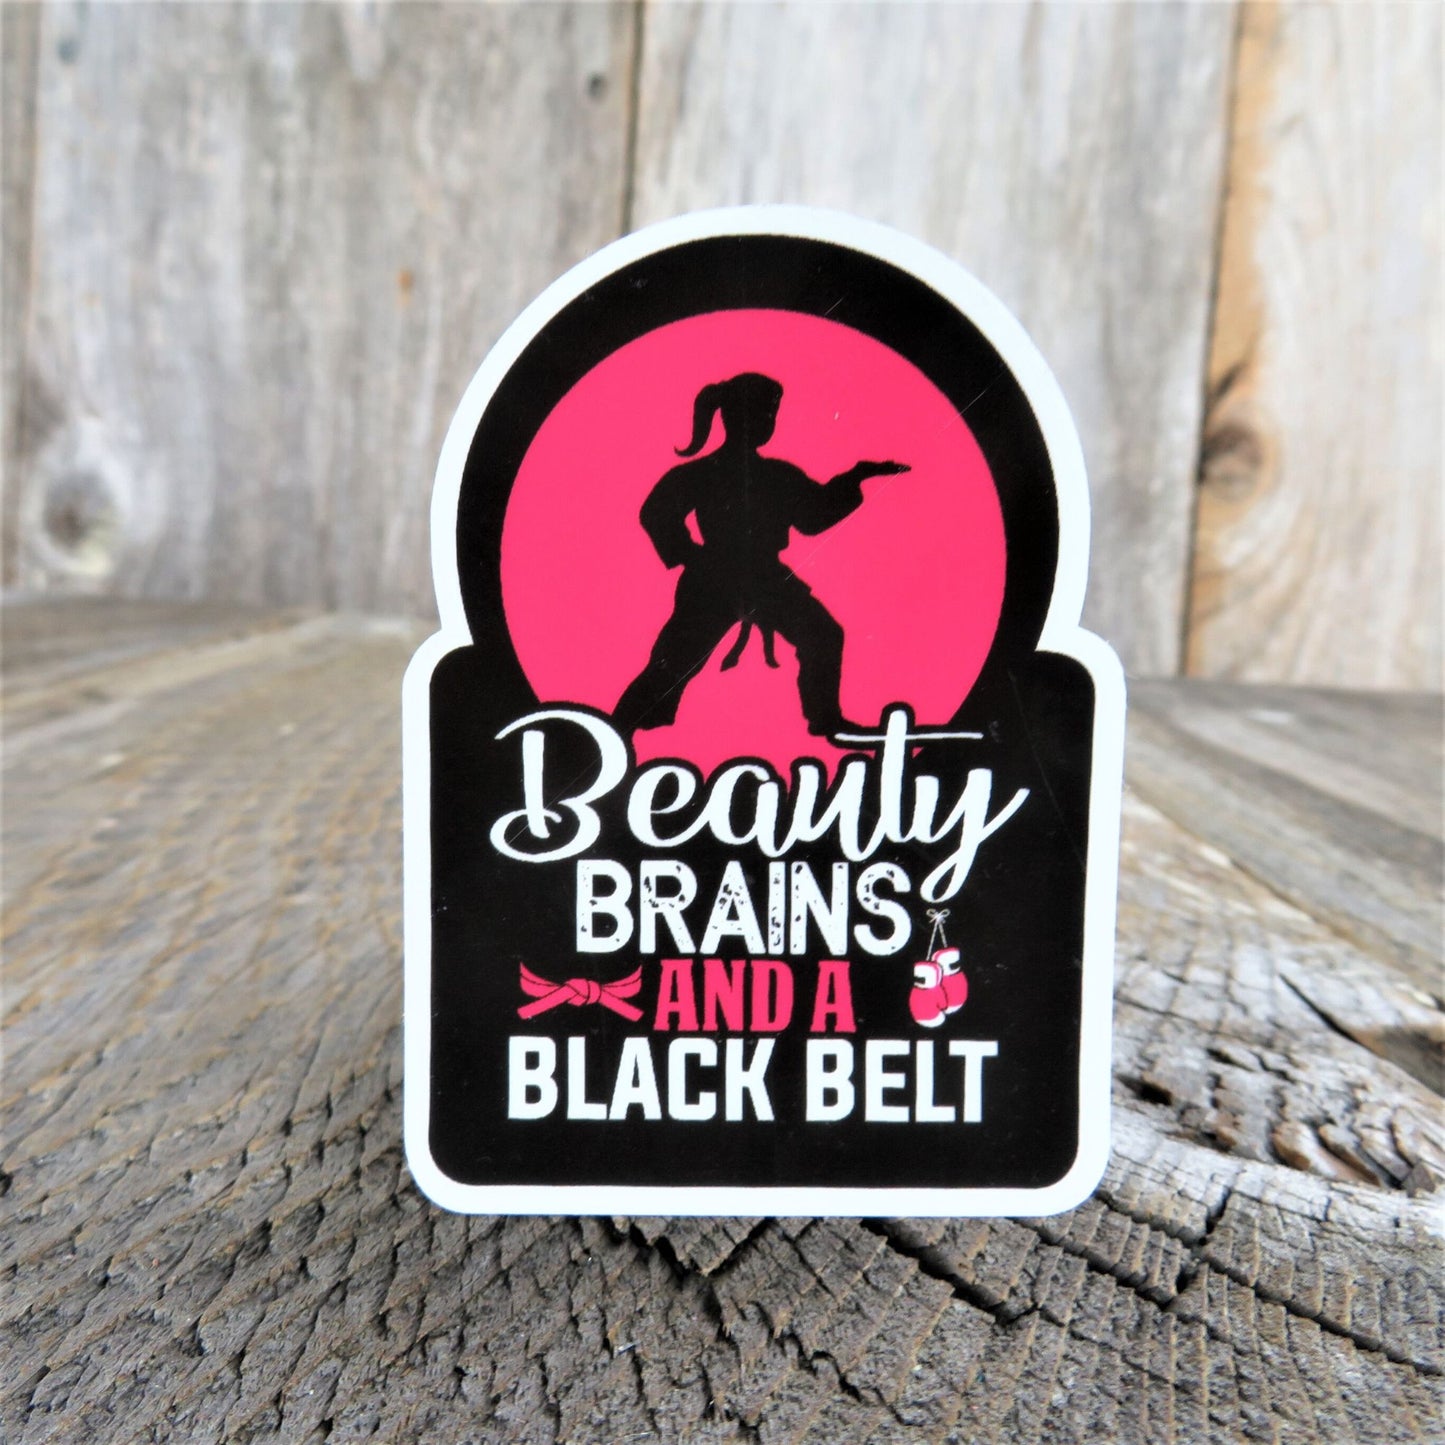 Beauty Brains Blackbelt Sticker Waterproof Girl Martial Arts Karate Jiu Jitsu Humor Funny Car Water Bottle Laptop